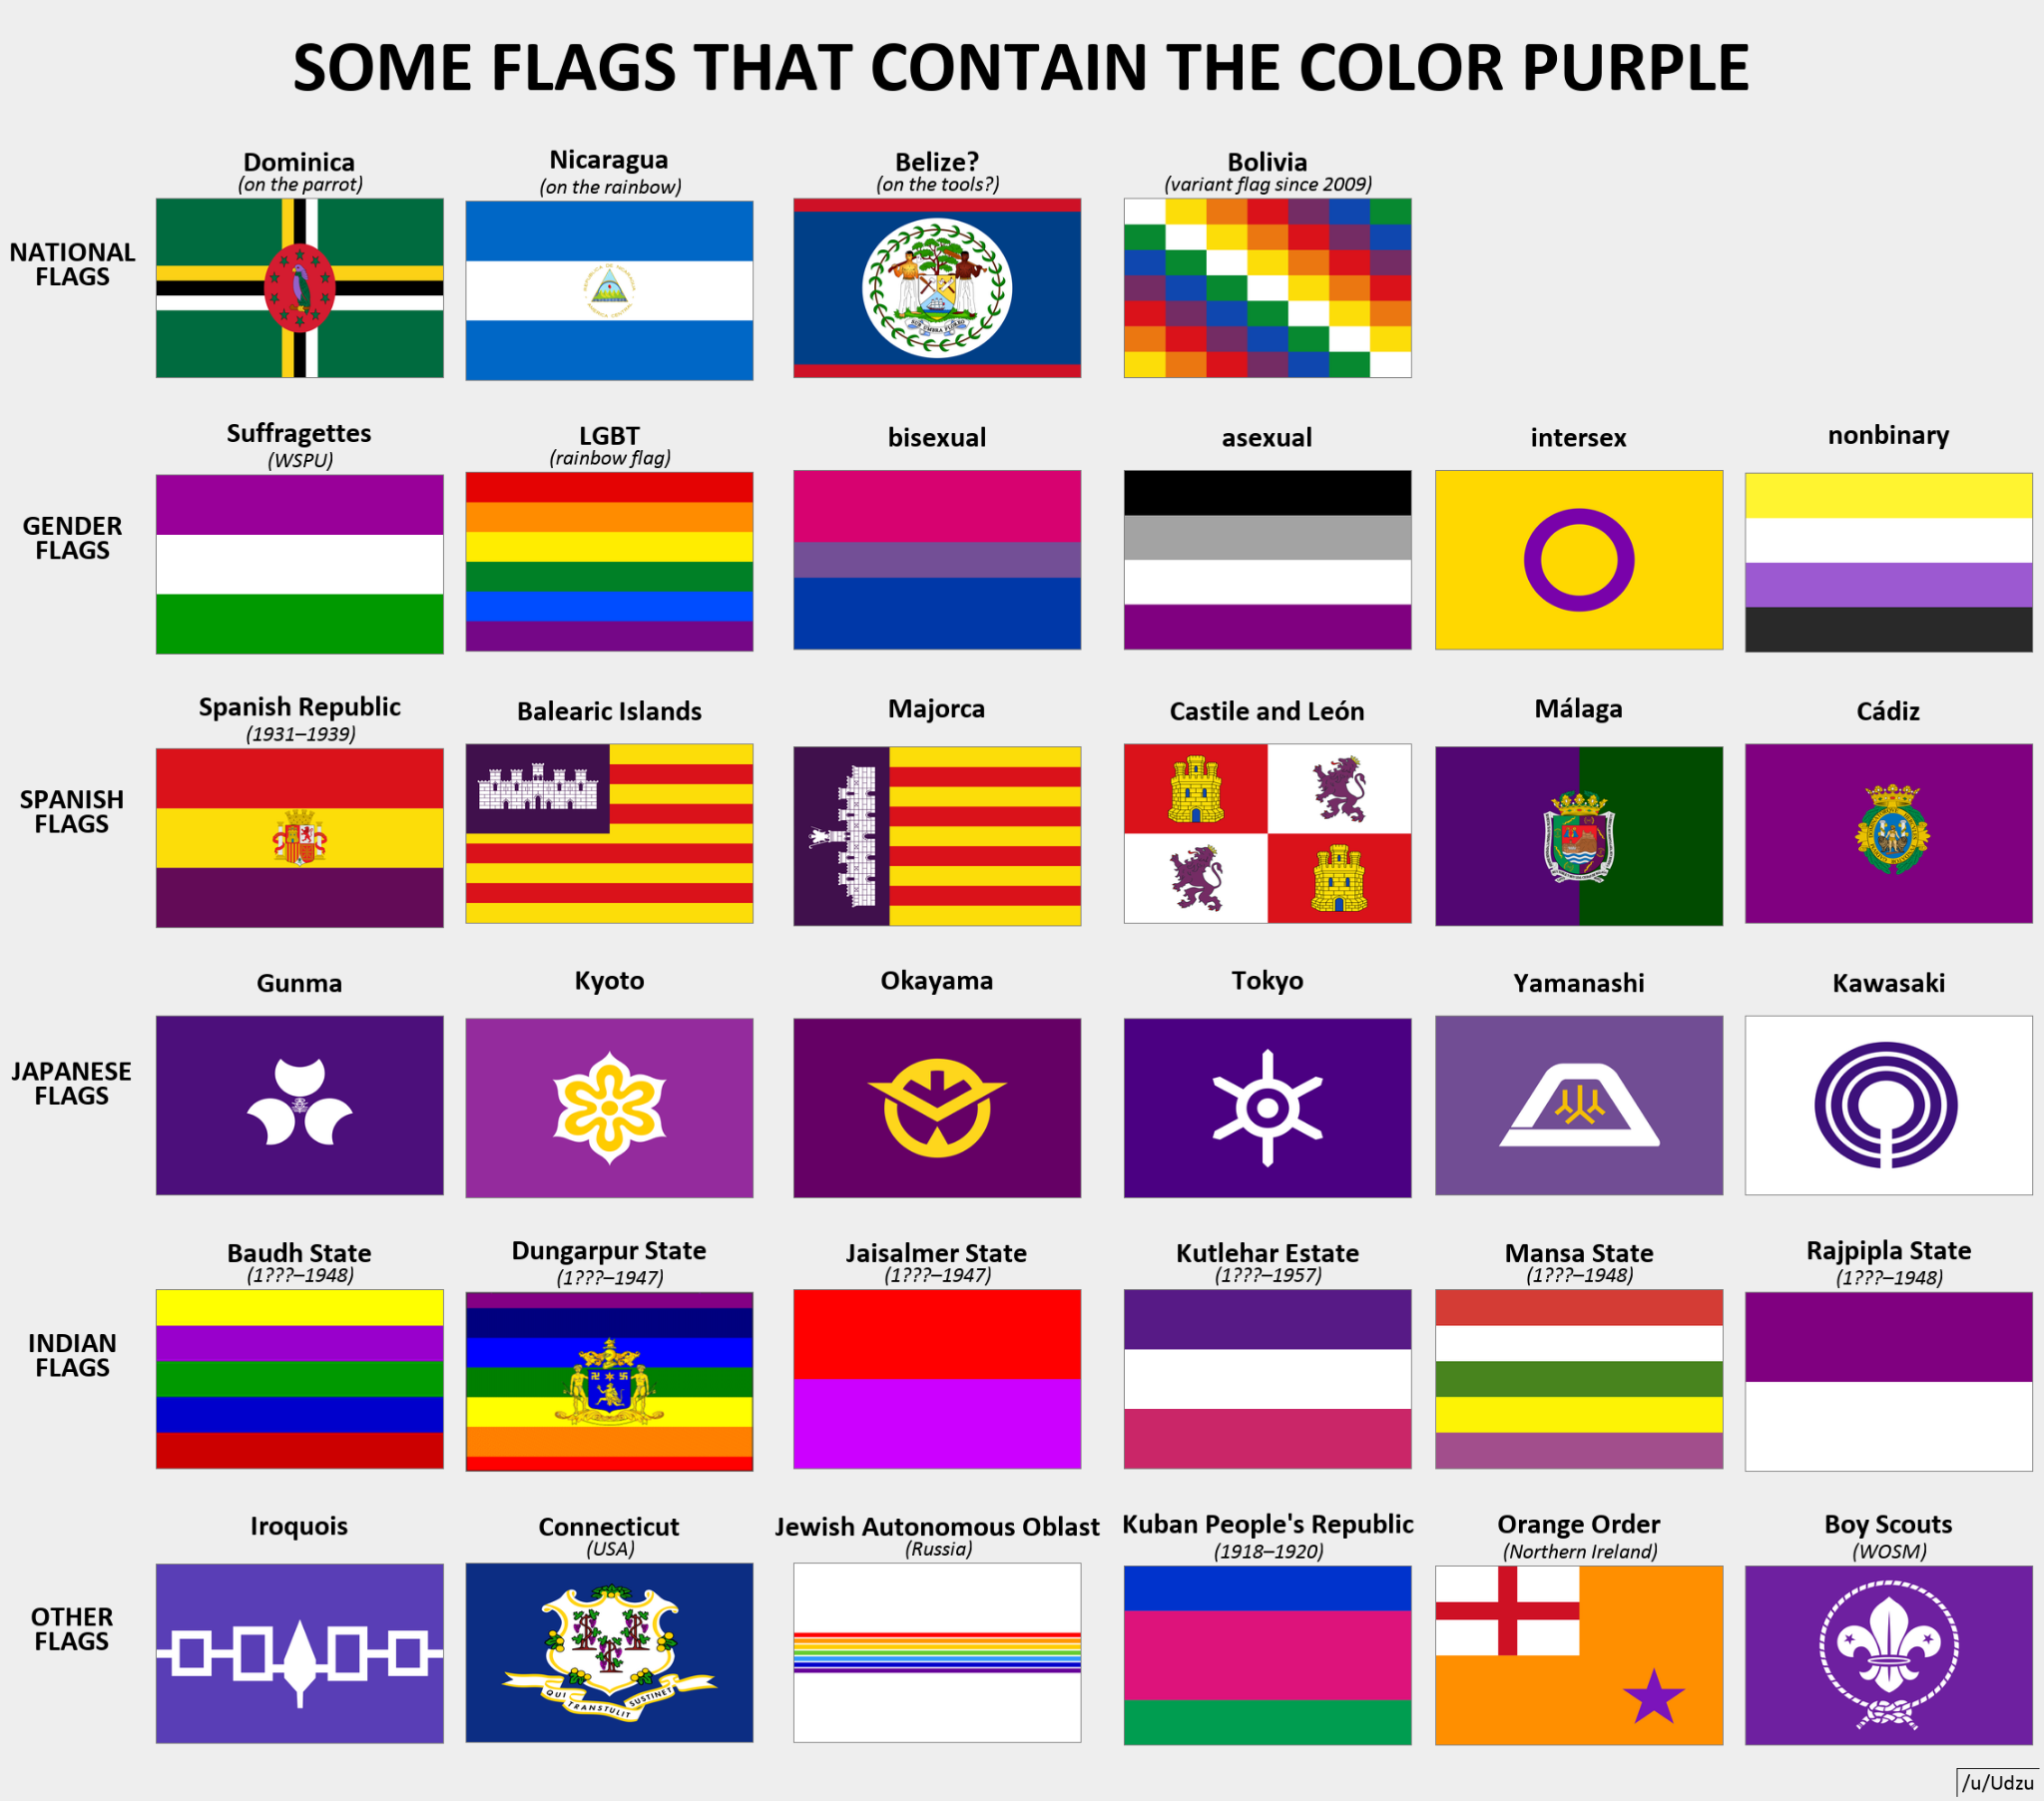 为什么世界所有的国家的国旗没有紫色? 